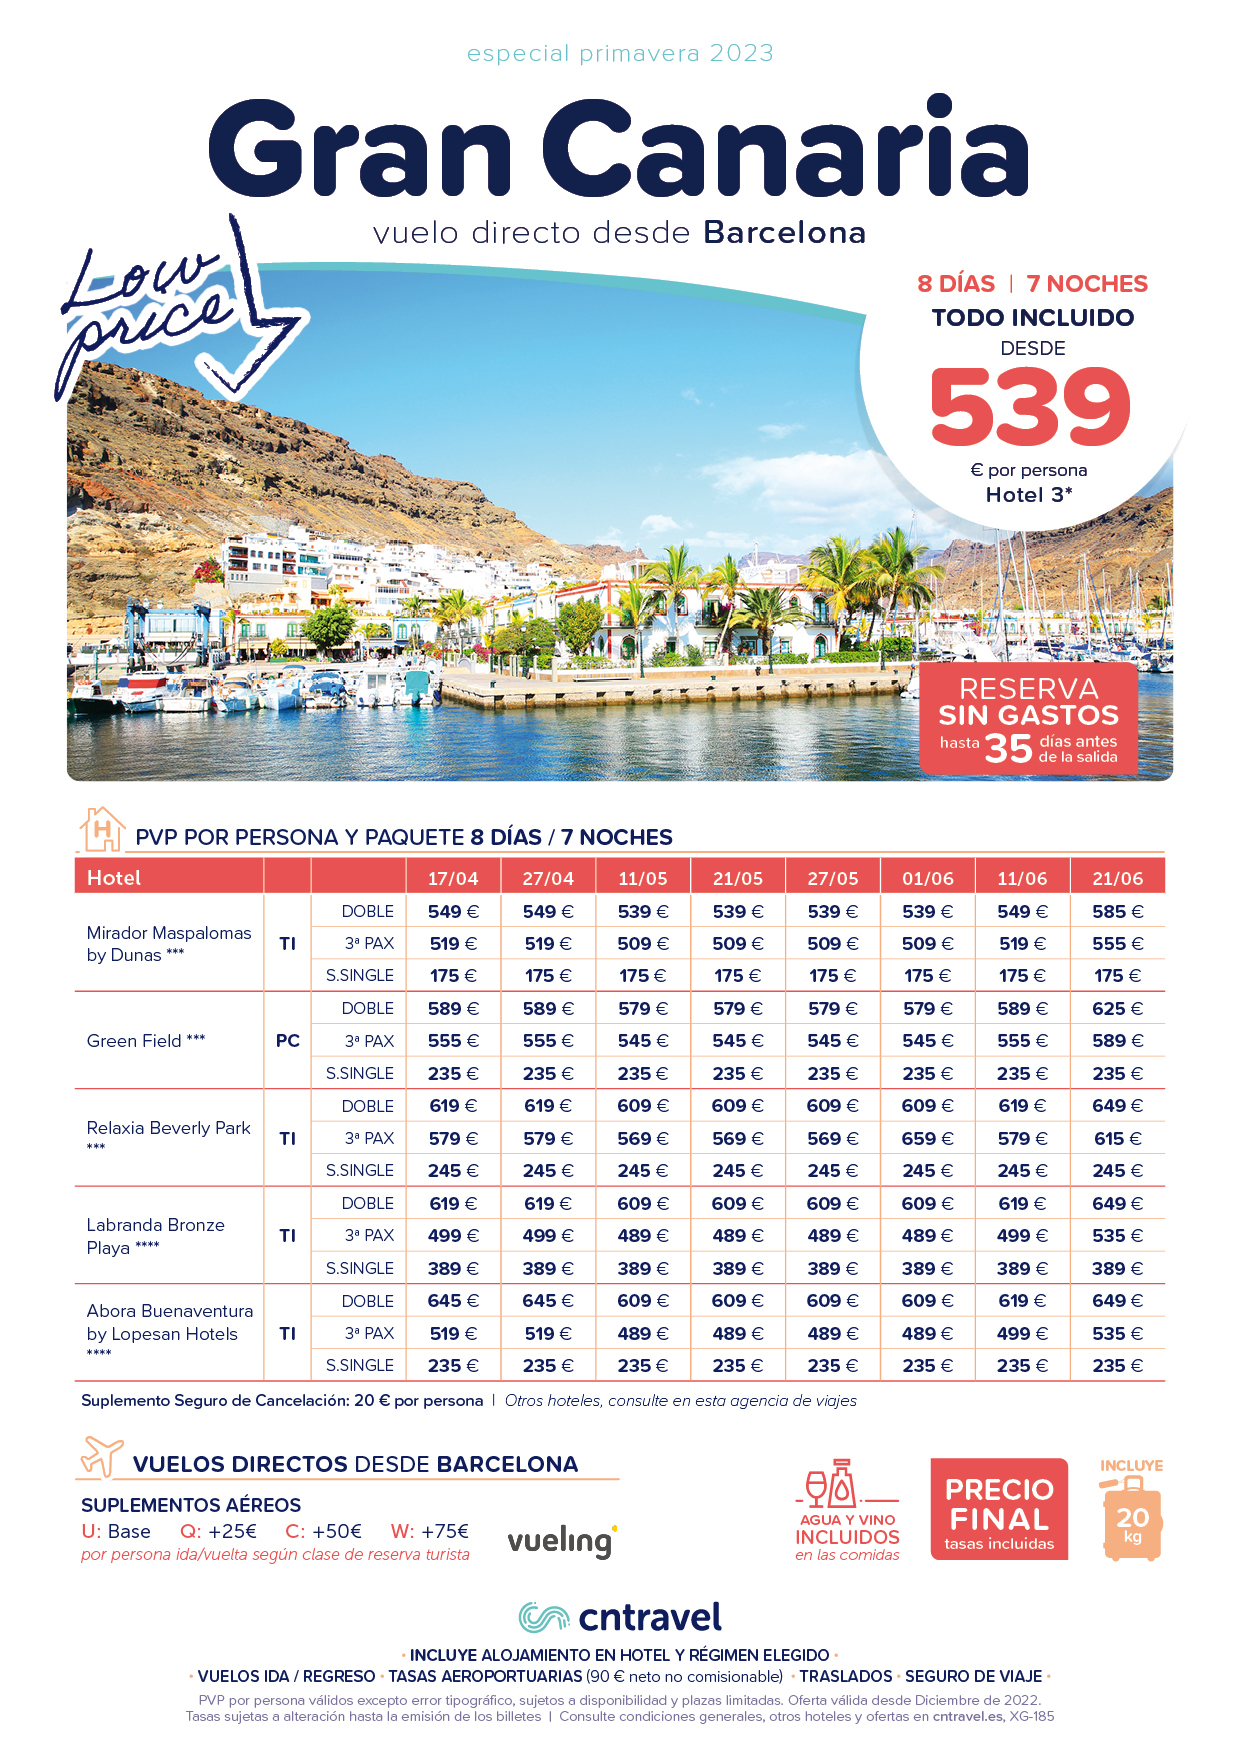 Ofertas CN Travel Abril Mayo Junio 2023 en Gran Canaria 8 dias Todo Incluido en Lanzarote vuelo directo desde Barcelona